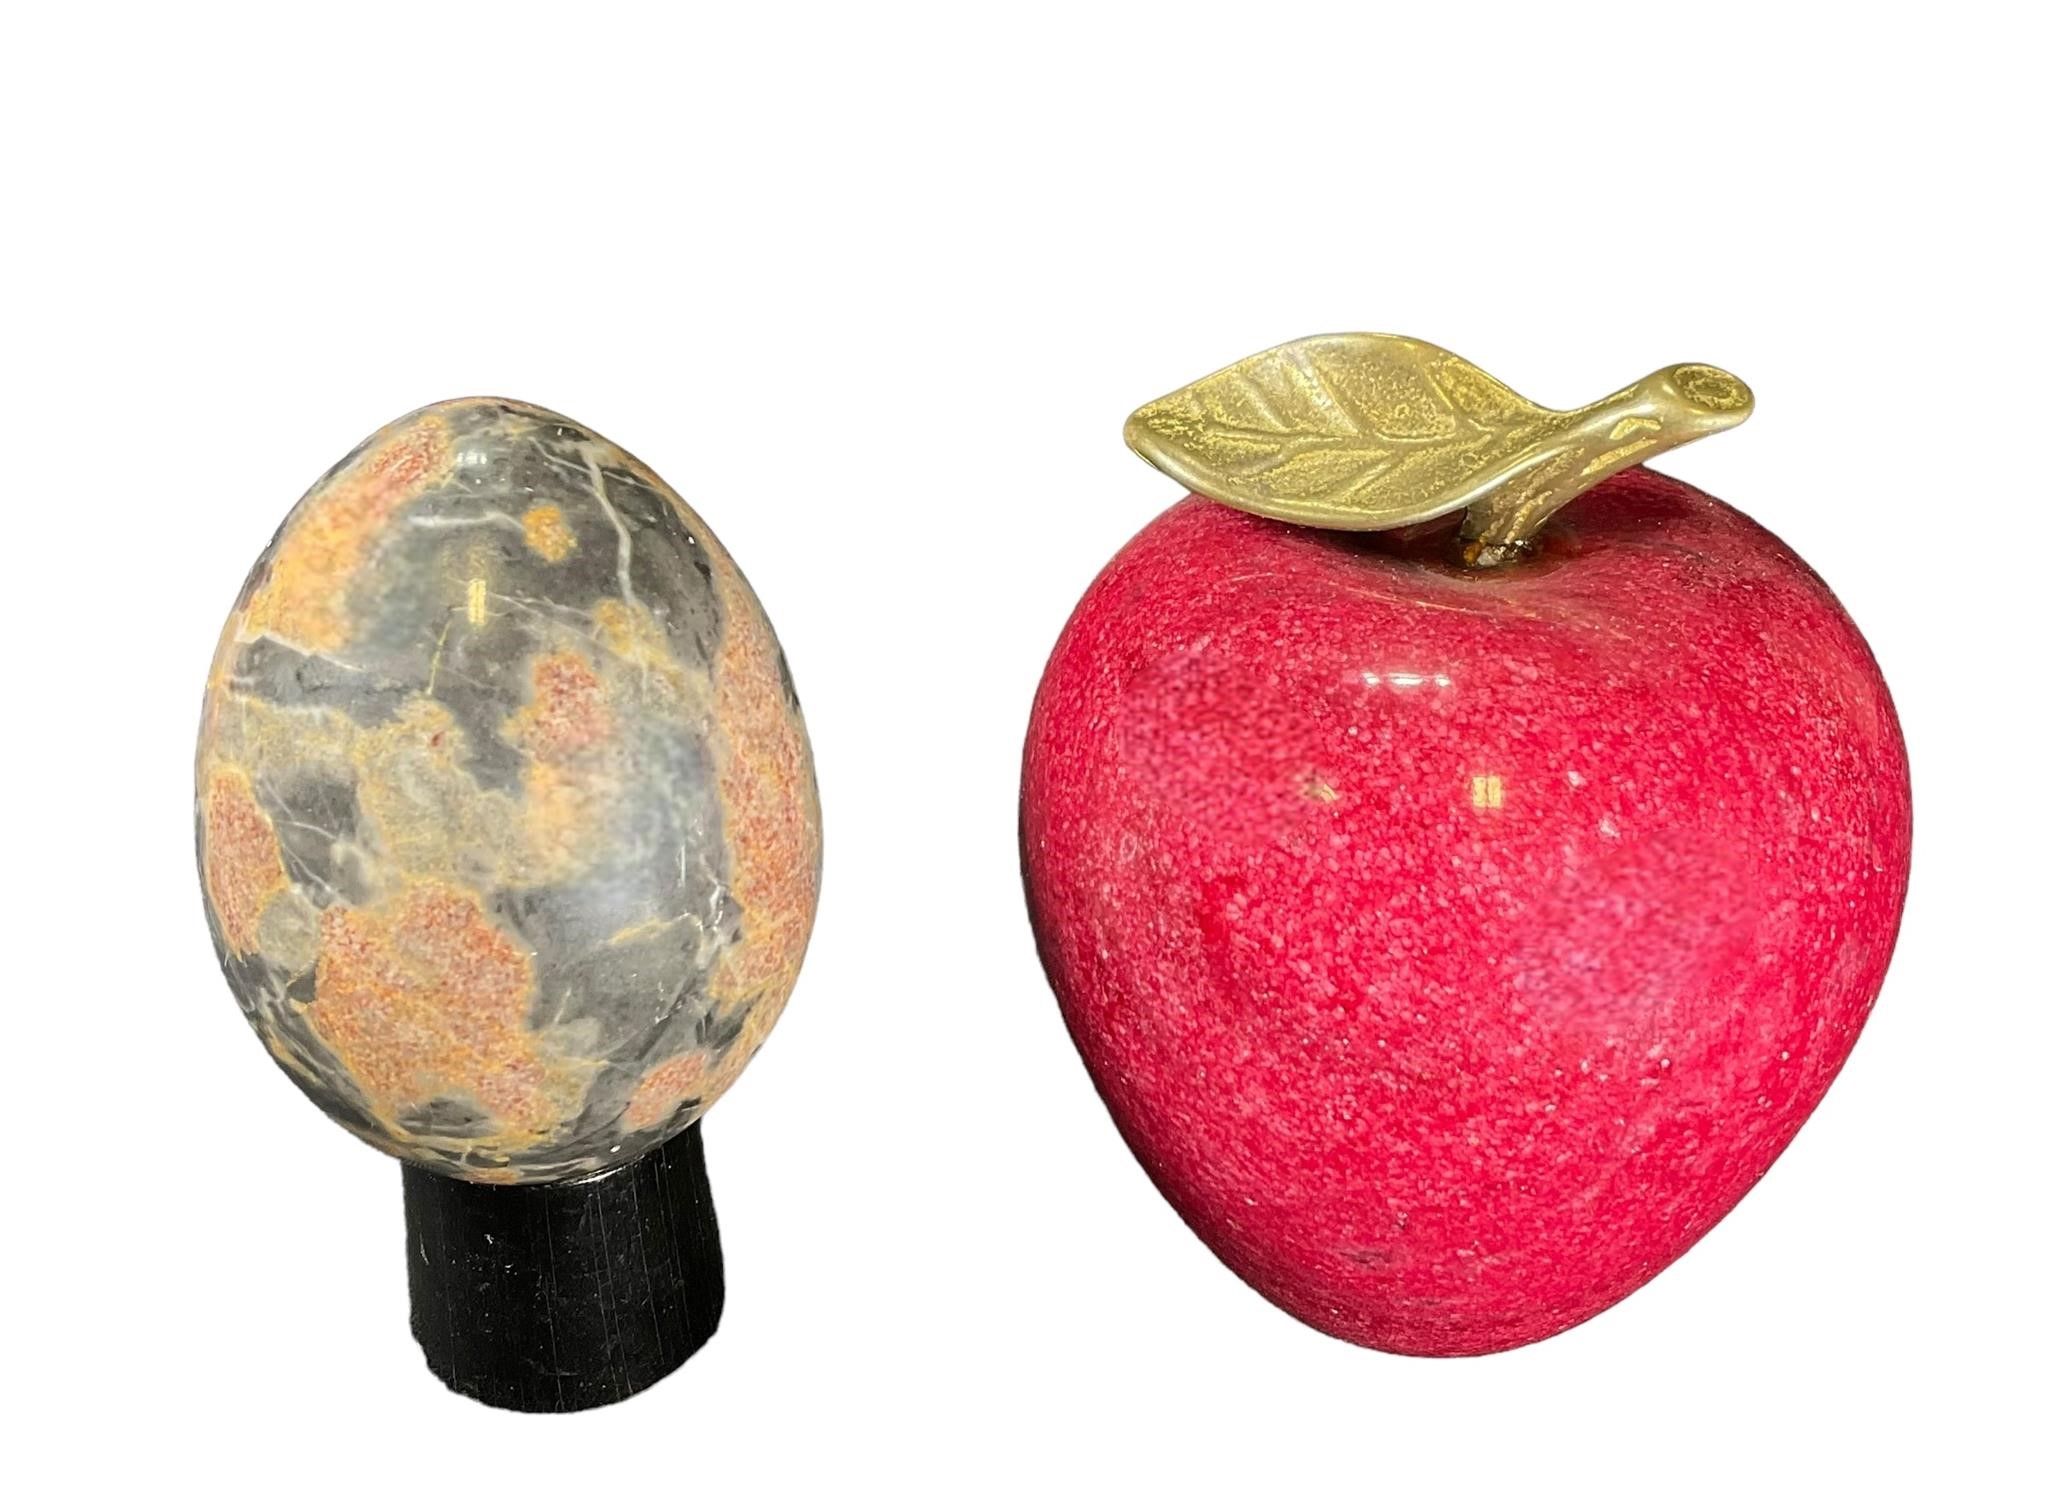 Marble Apple & Egg Décor Items